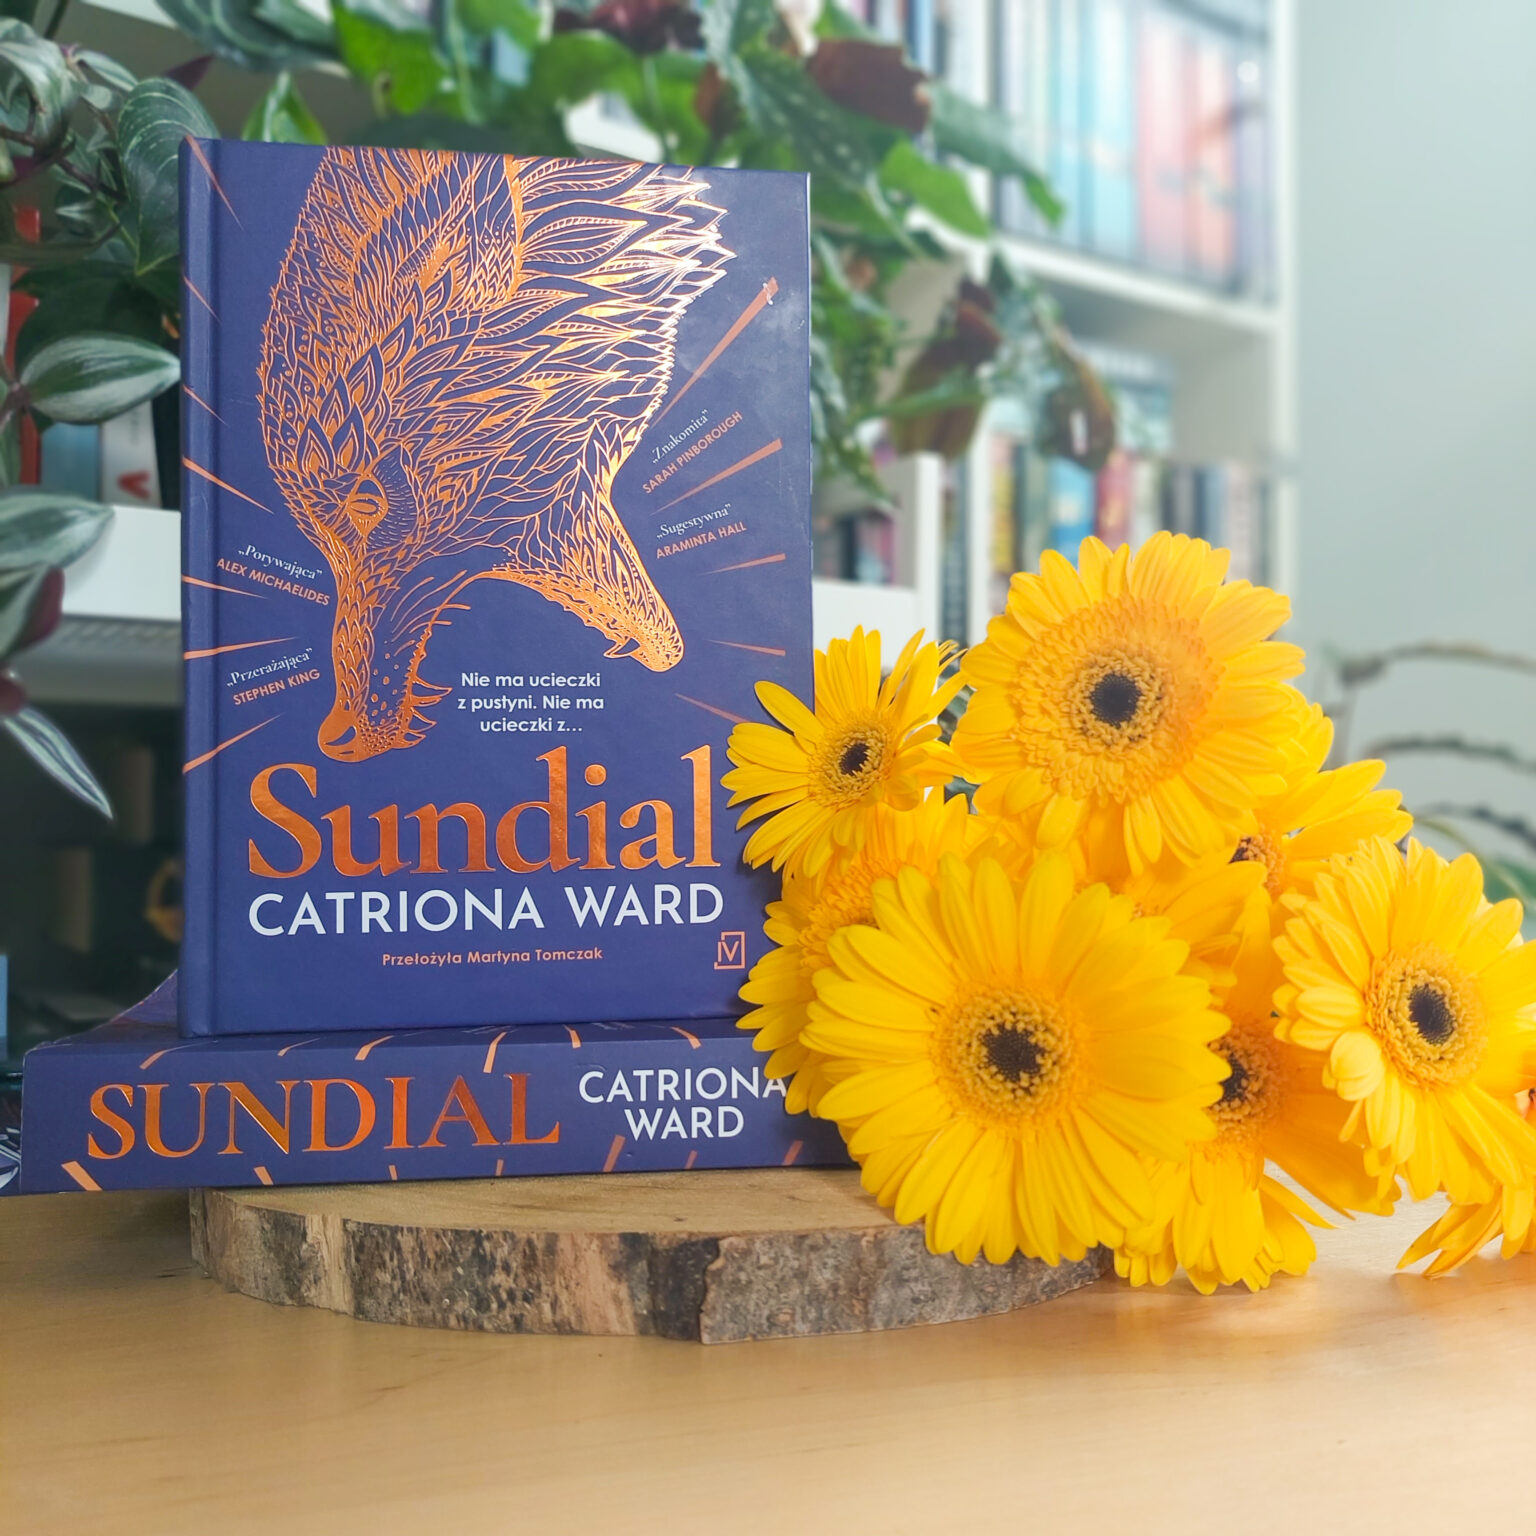 sundial catriona ward summary